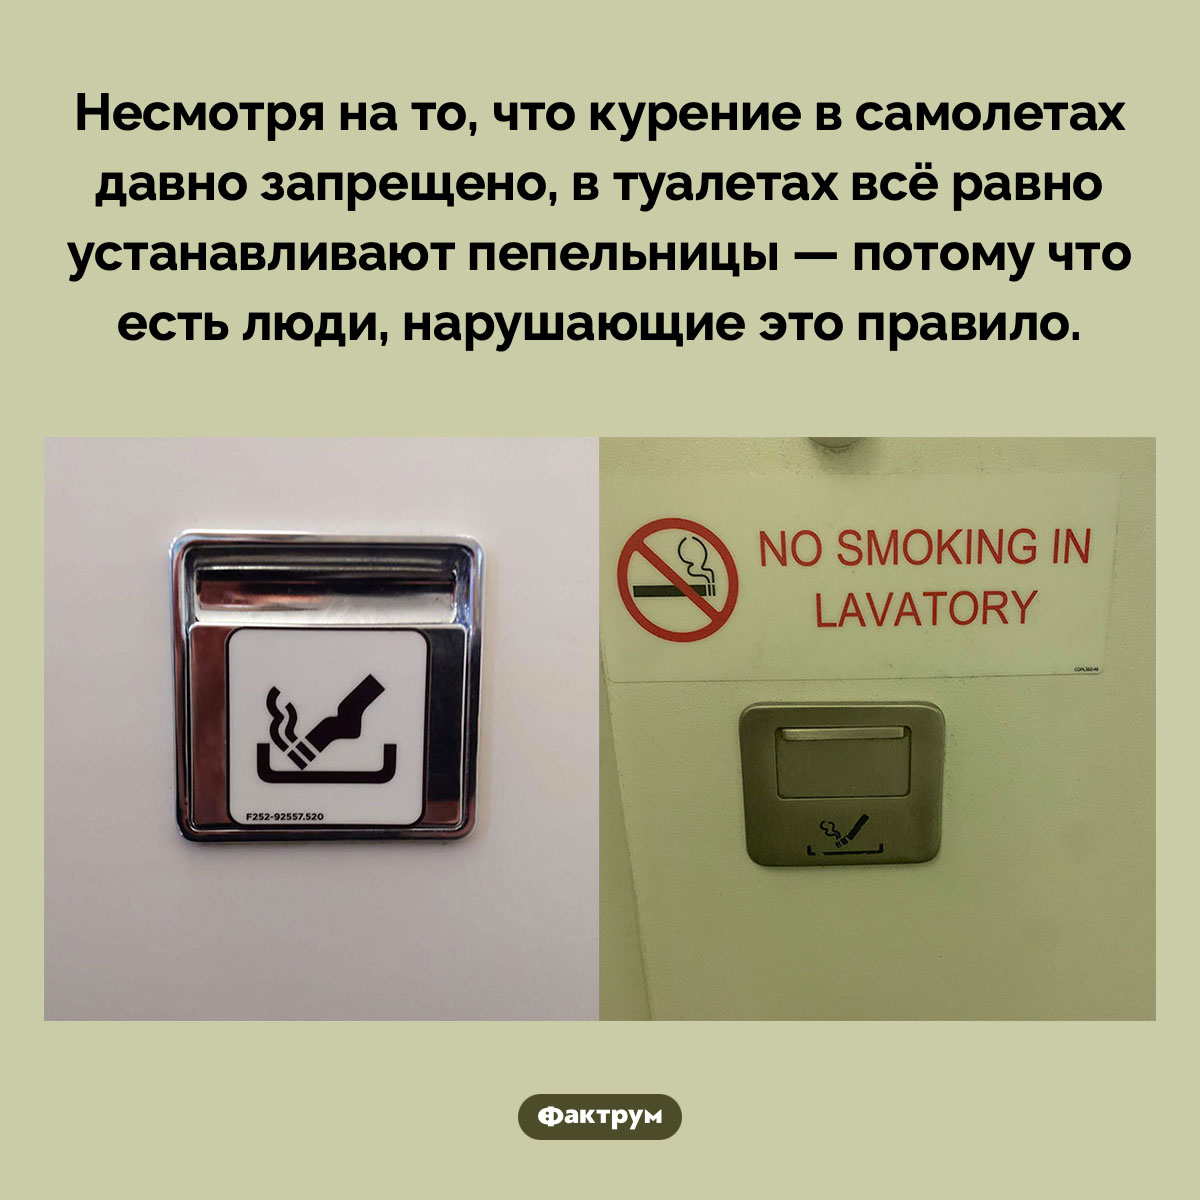 Почему в самолетах есть пепельницы. Несмотря на то, что курение в самолетах давно запрещено, в туалетах всё равно устанавливают пепельницы — потому что есть люди, нарушающие это правило.